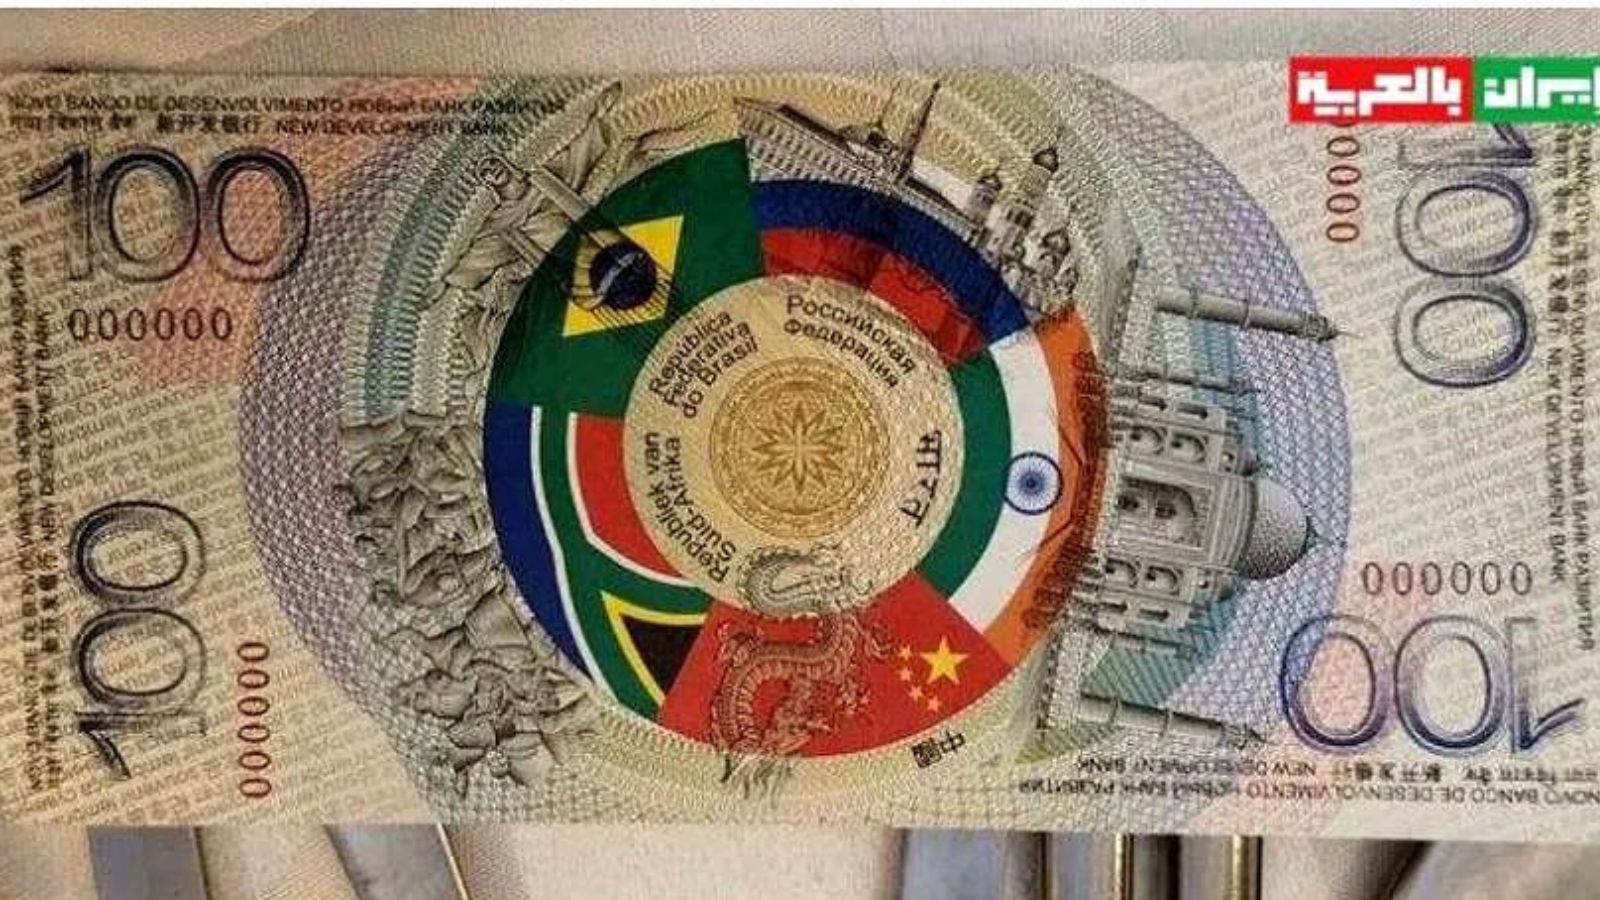 Nota de 100 BRICS comemorativa